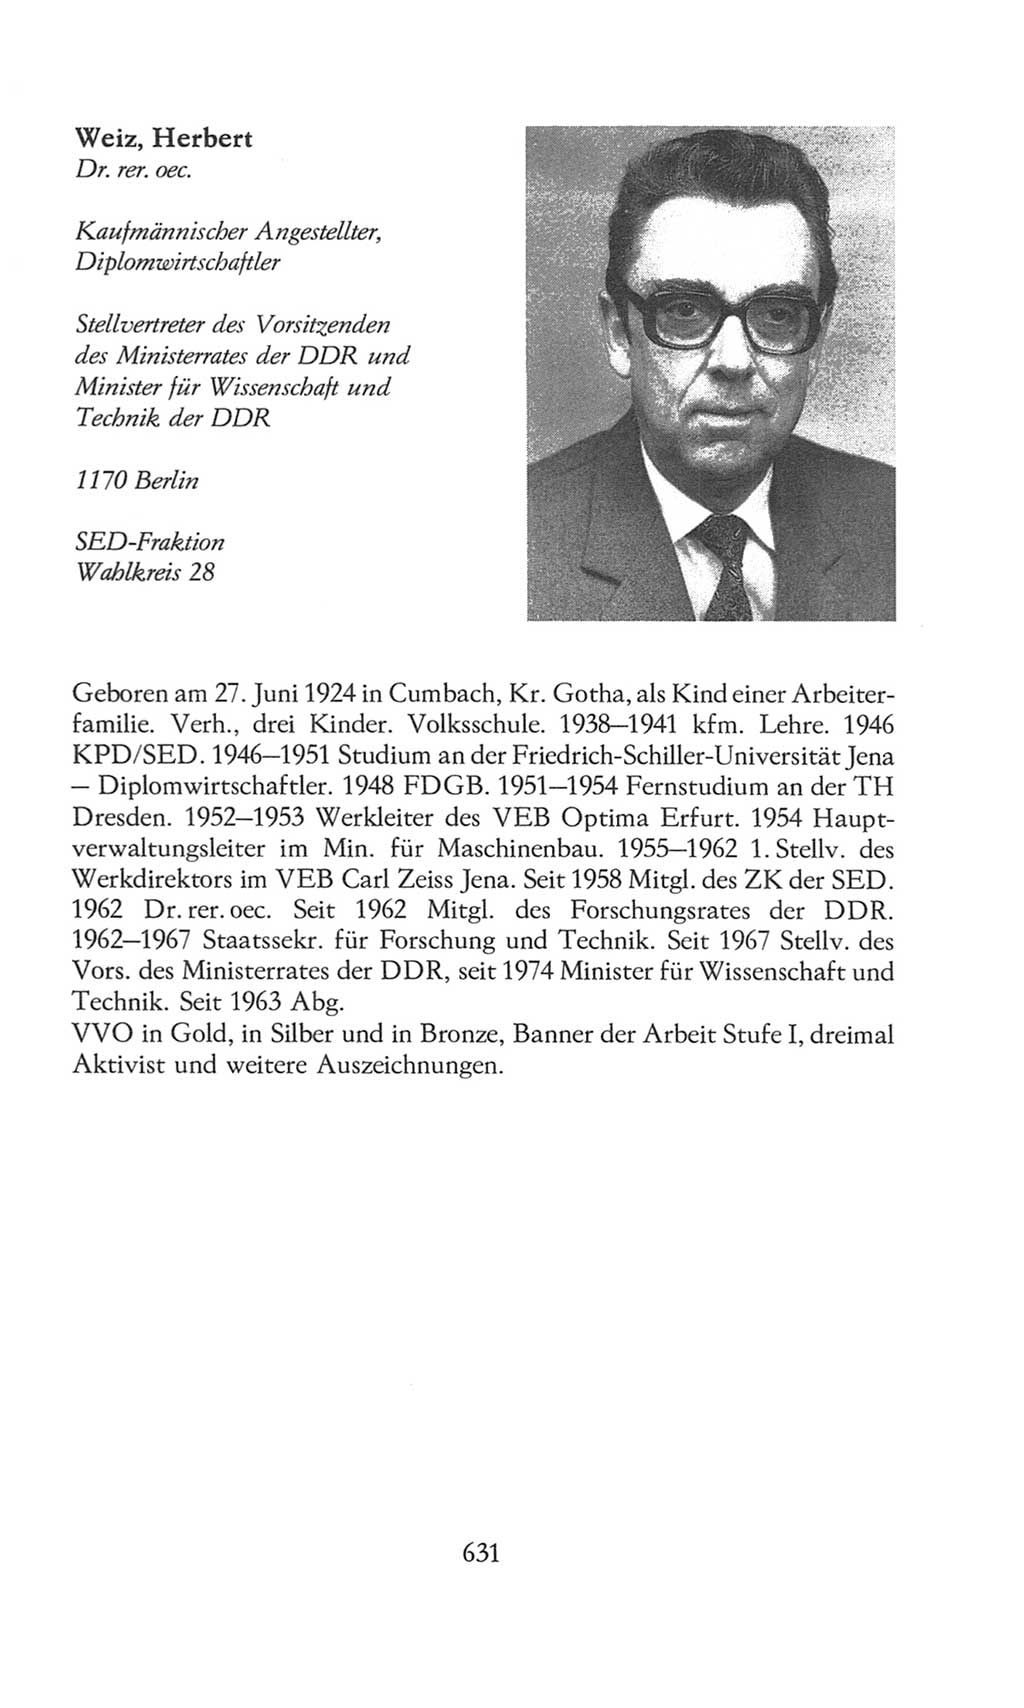 Volkskammer (VK) der Deutschen Demokratischen Republik (DDR), 8. Wahlperiode 1981-1986, Seite 631 (VK. DDR 8. WP. 1981-1986, S. 631)